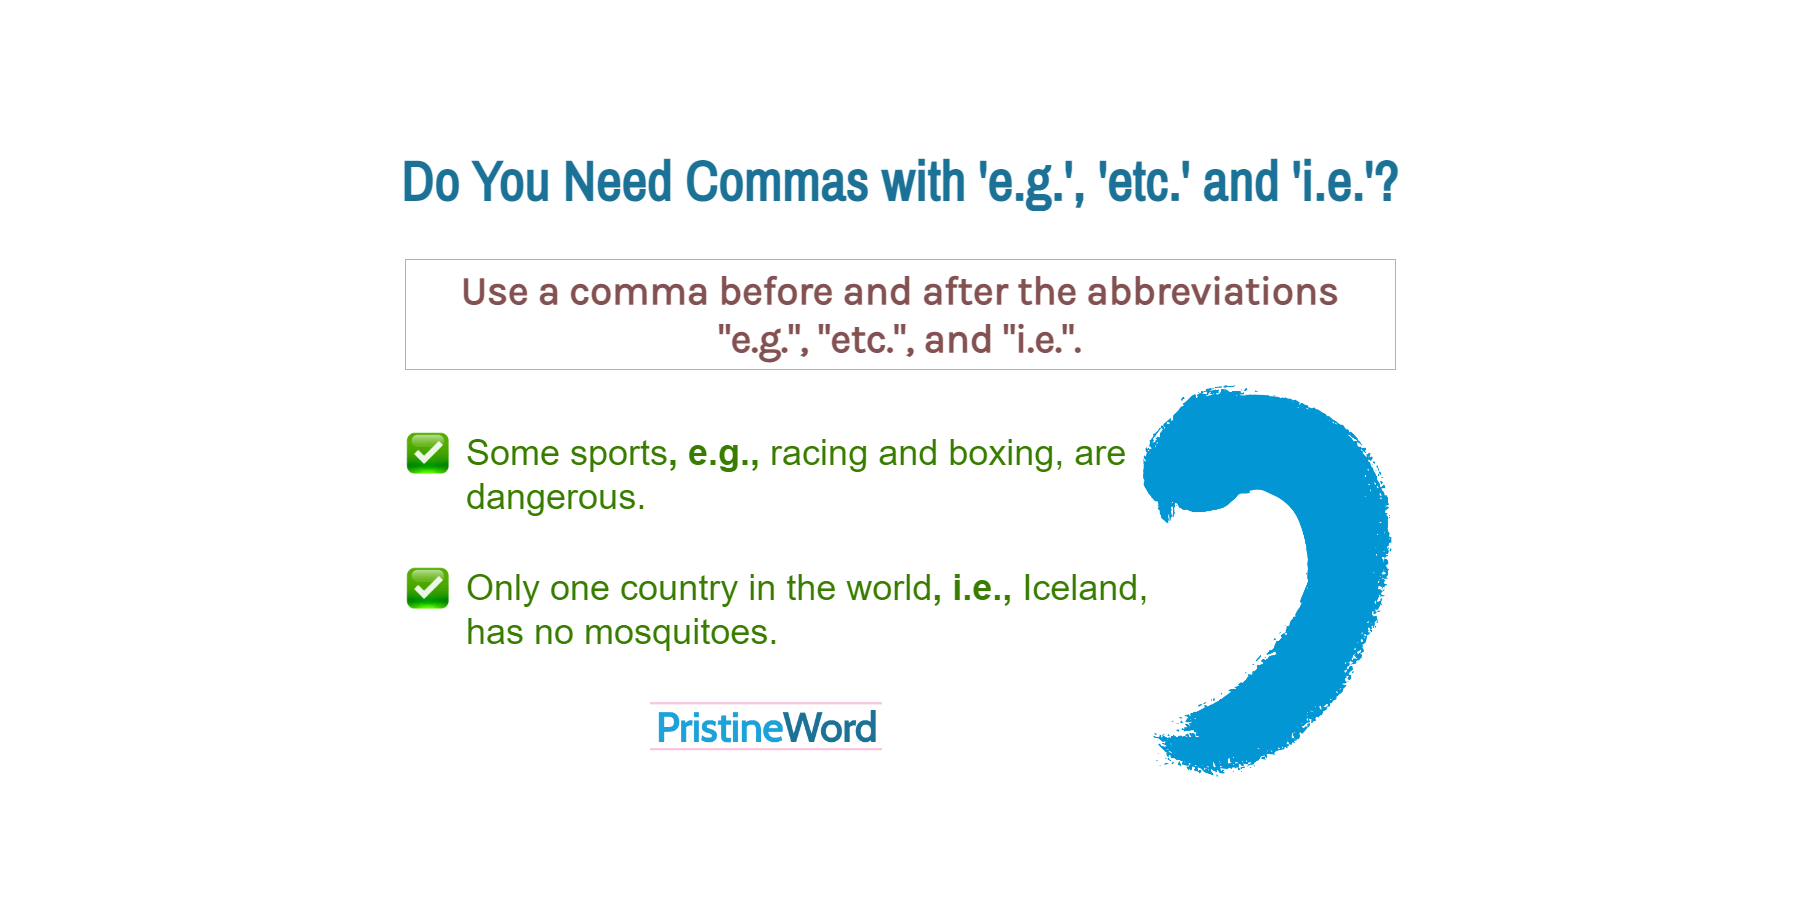 Do You Need Commas With 'e.g.', 'etc.' and 'i.e.'?